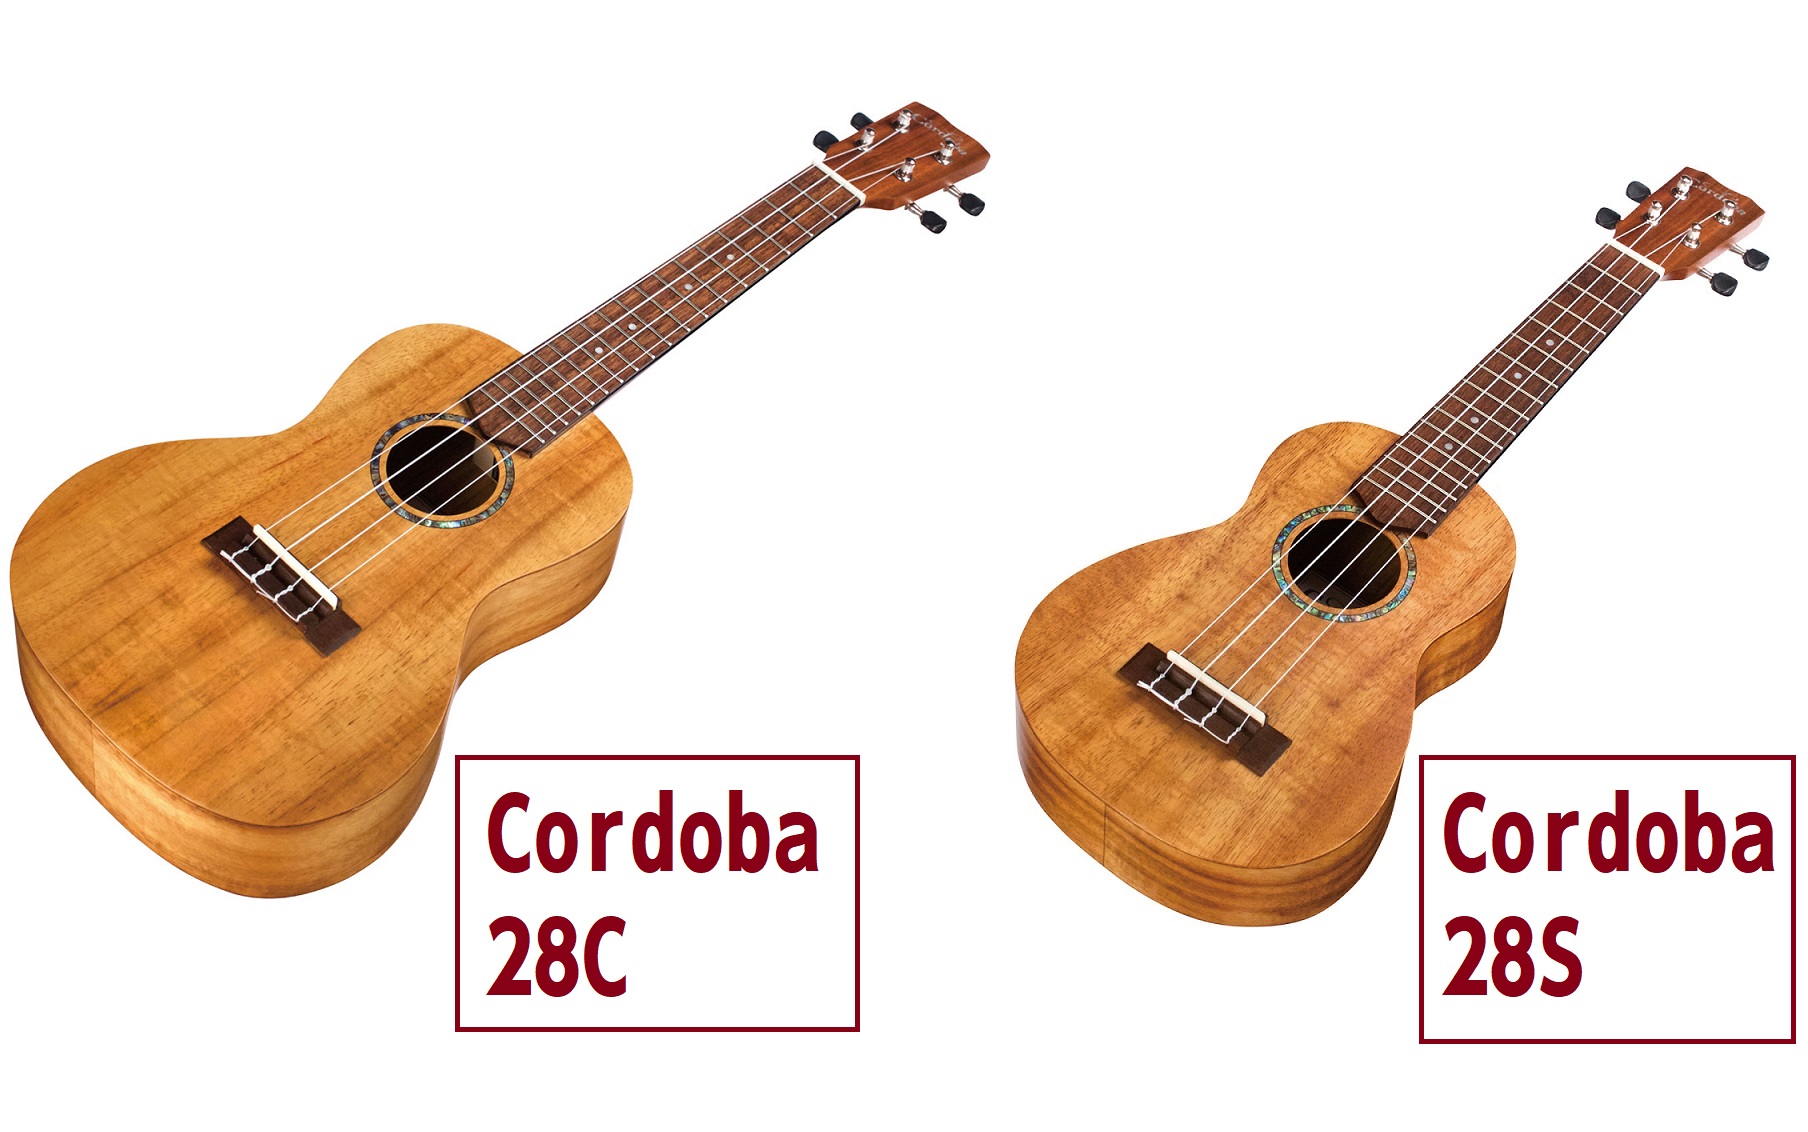 冬セール開催中 Cordoba コンサートウクレレ 28C 弦楽器